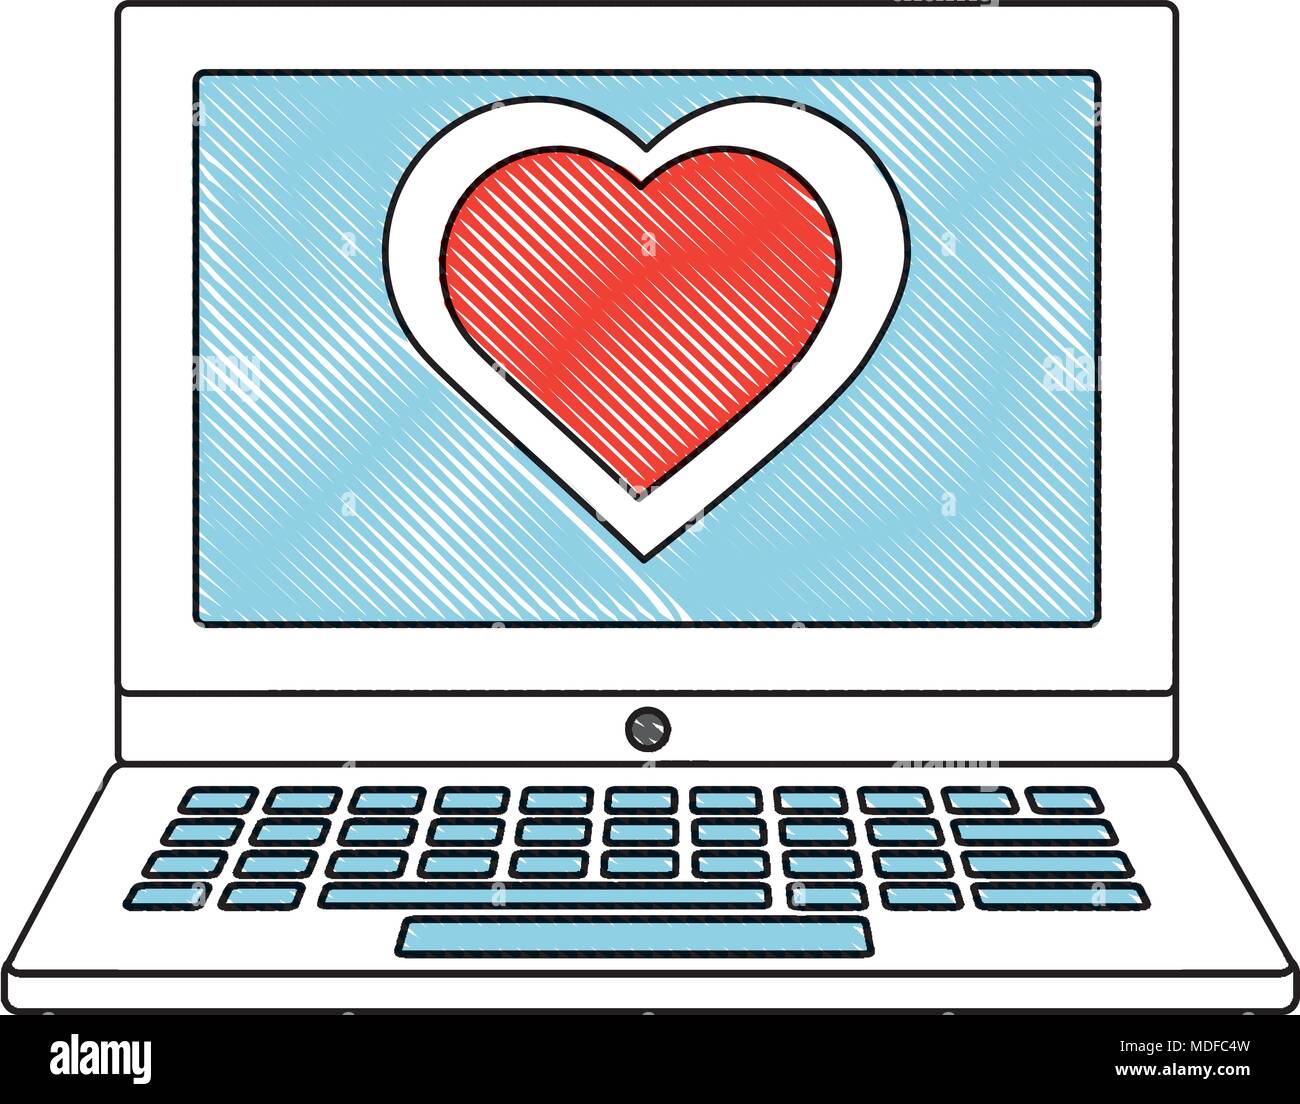 Laptop Herz in Liebe auf dem Bildschirm Technologie Stock-Vektorgrafik -  Alamy